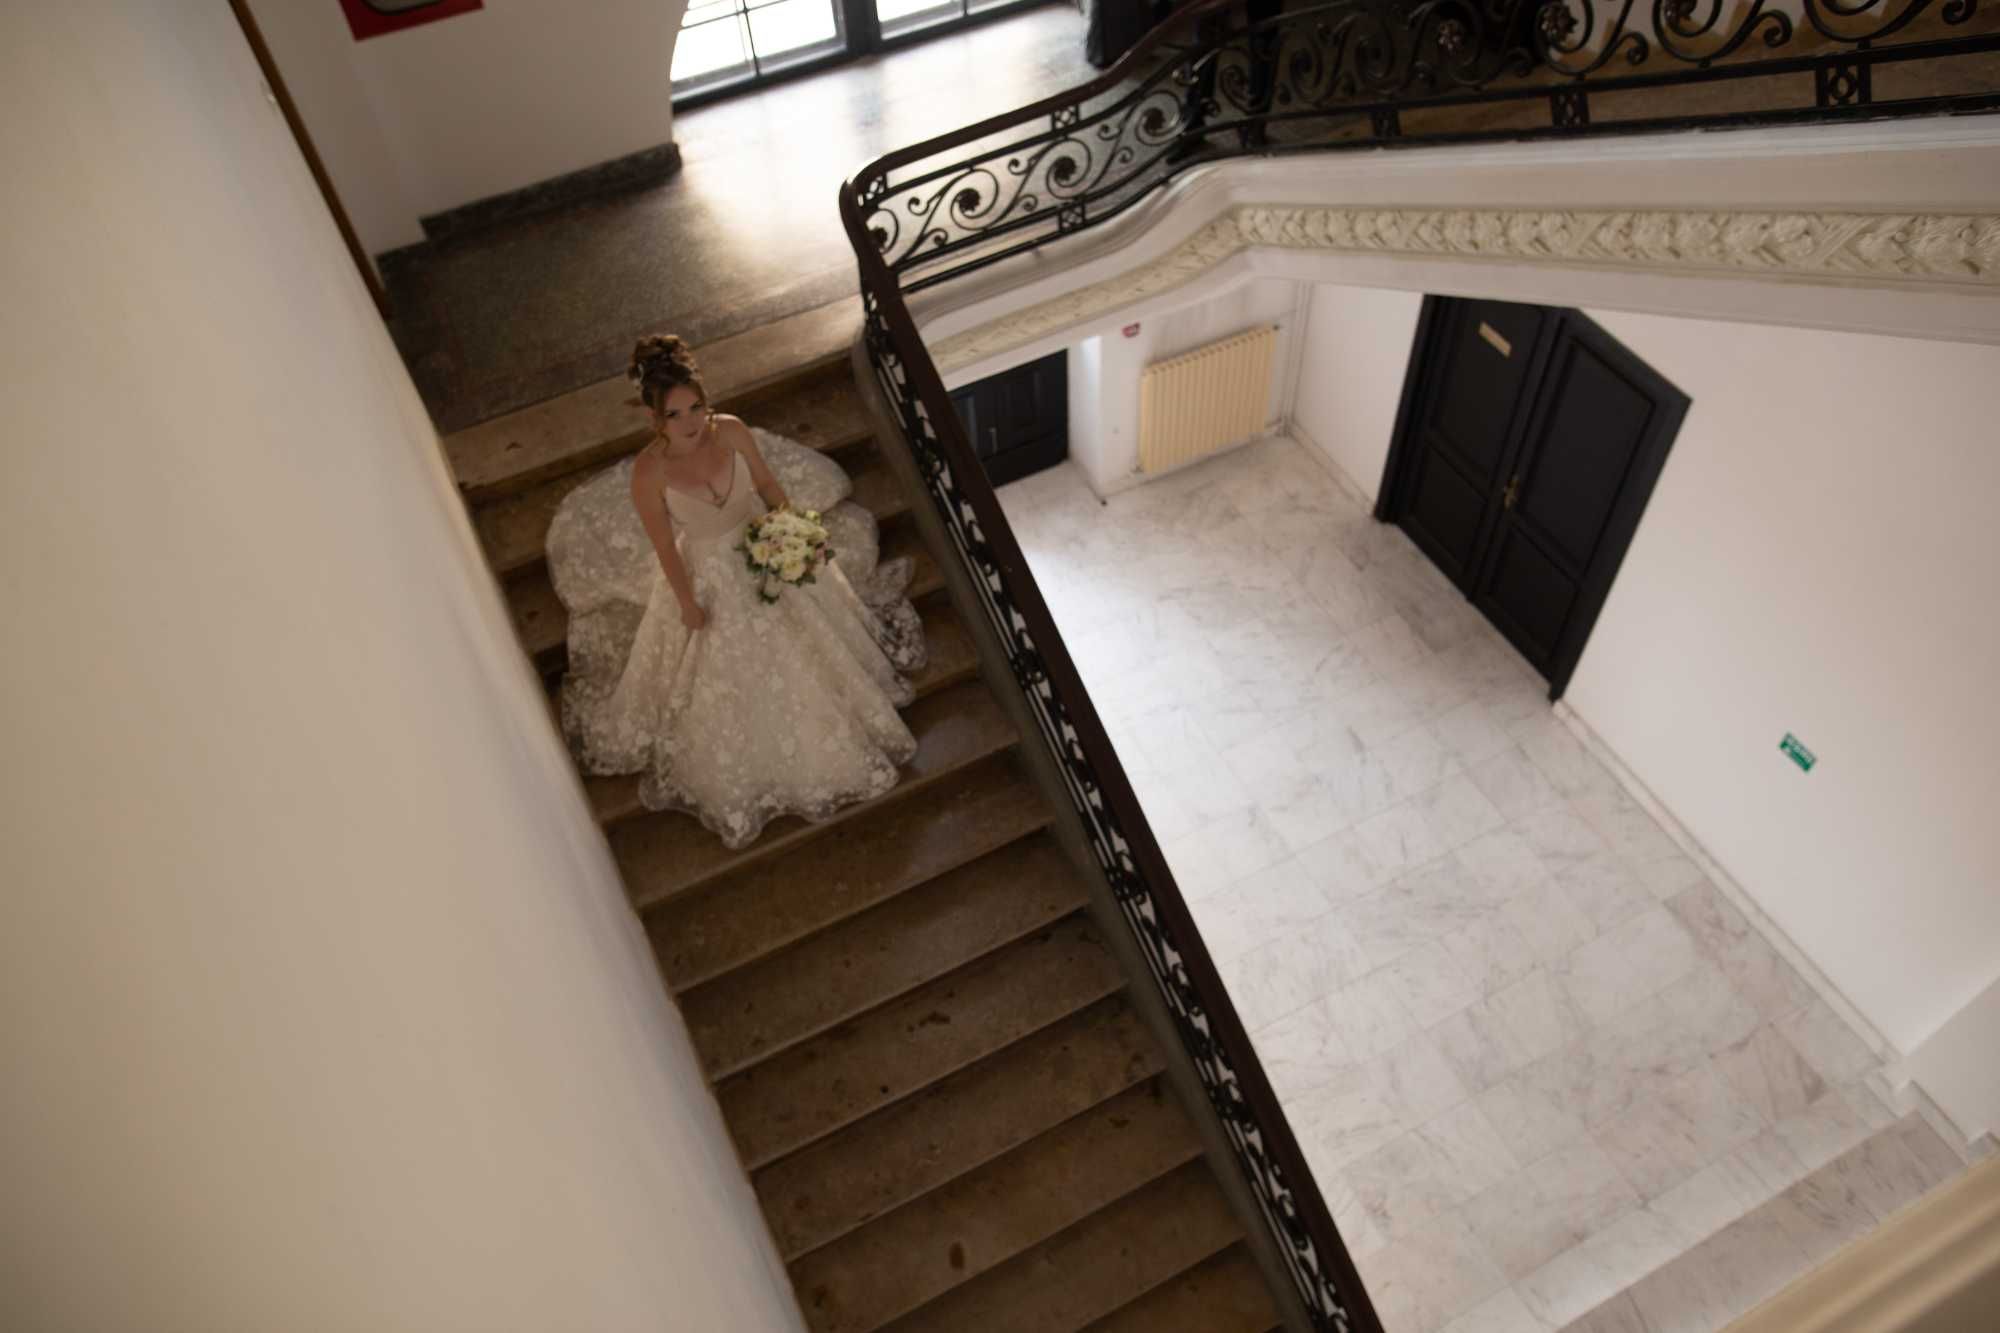 Rochie de mireasa -Exclusive Bridal Timisoara